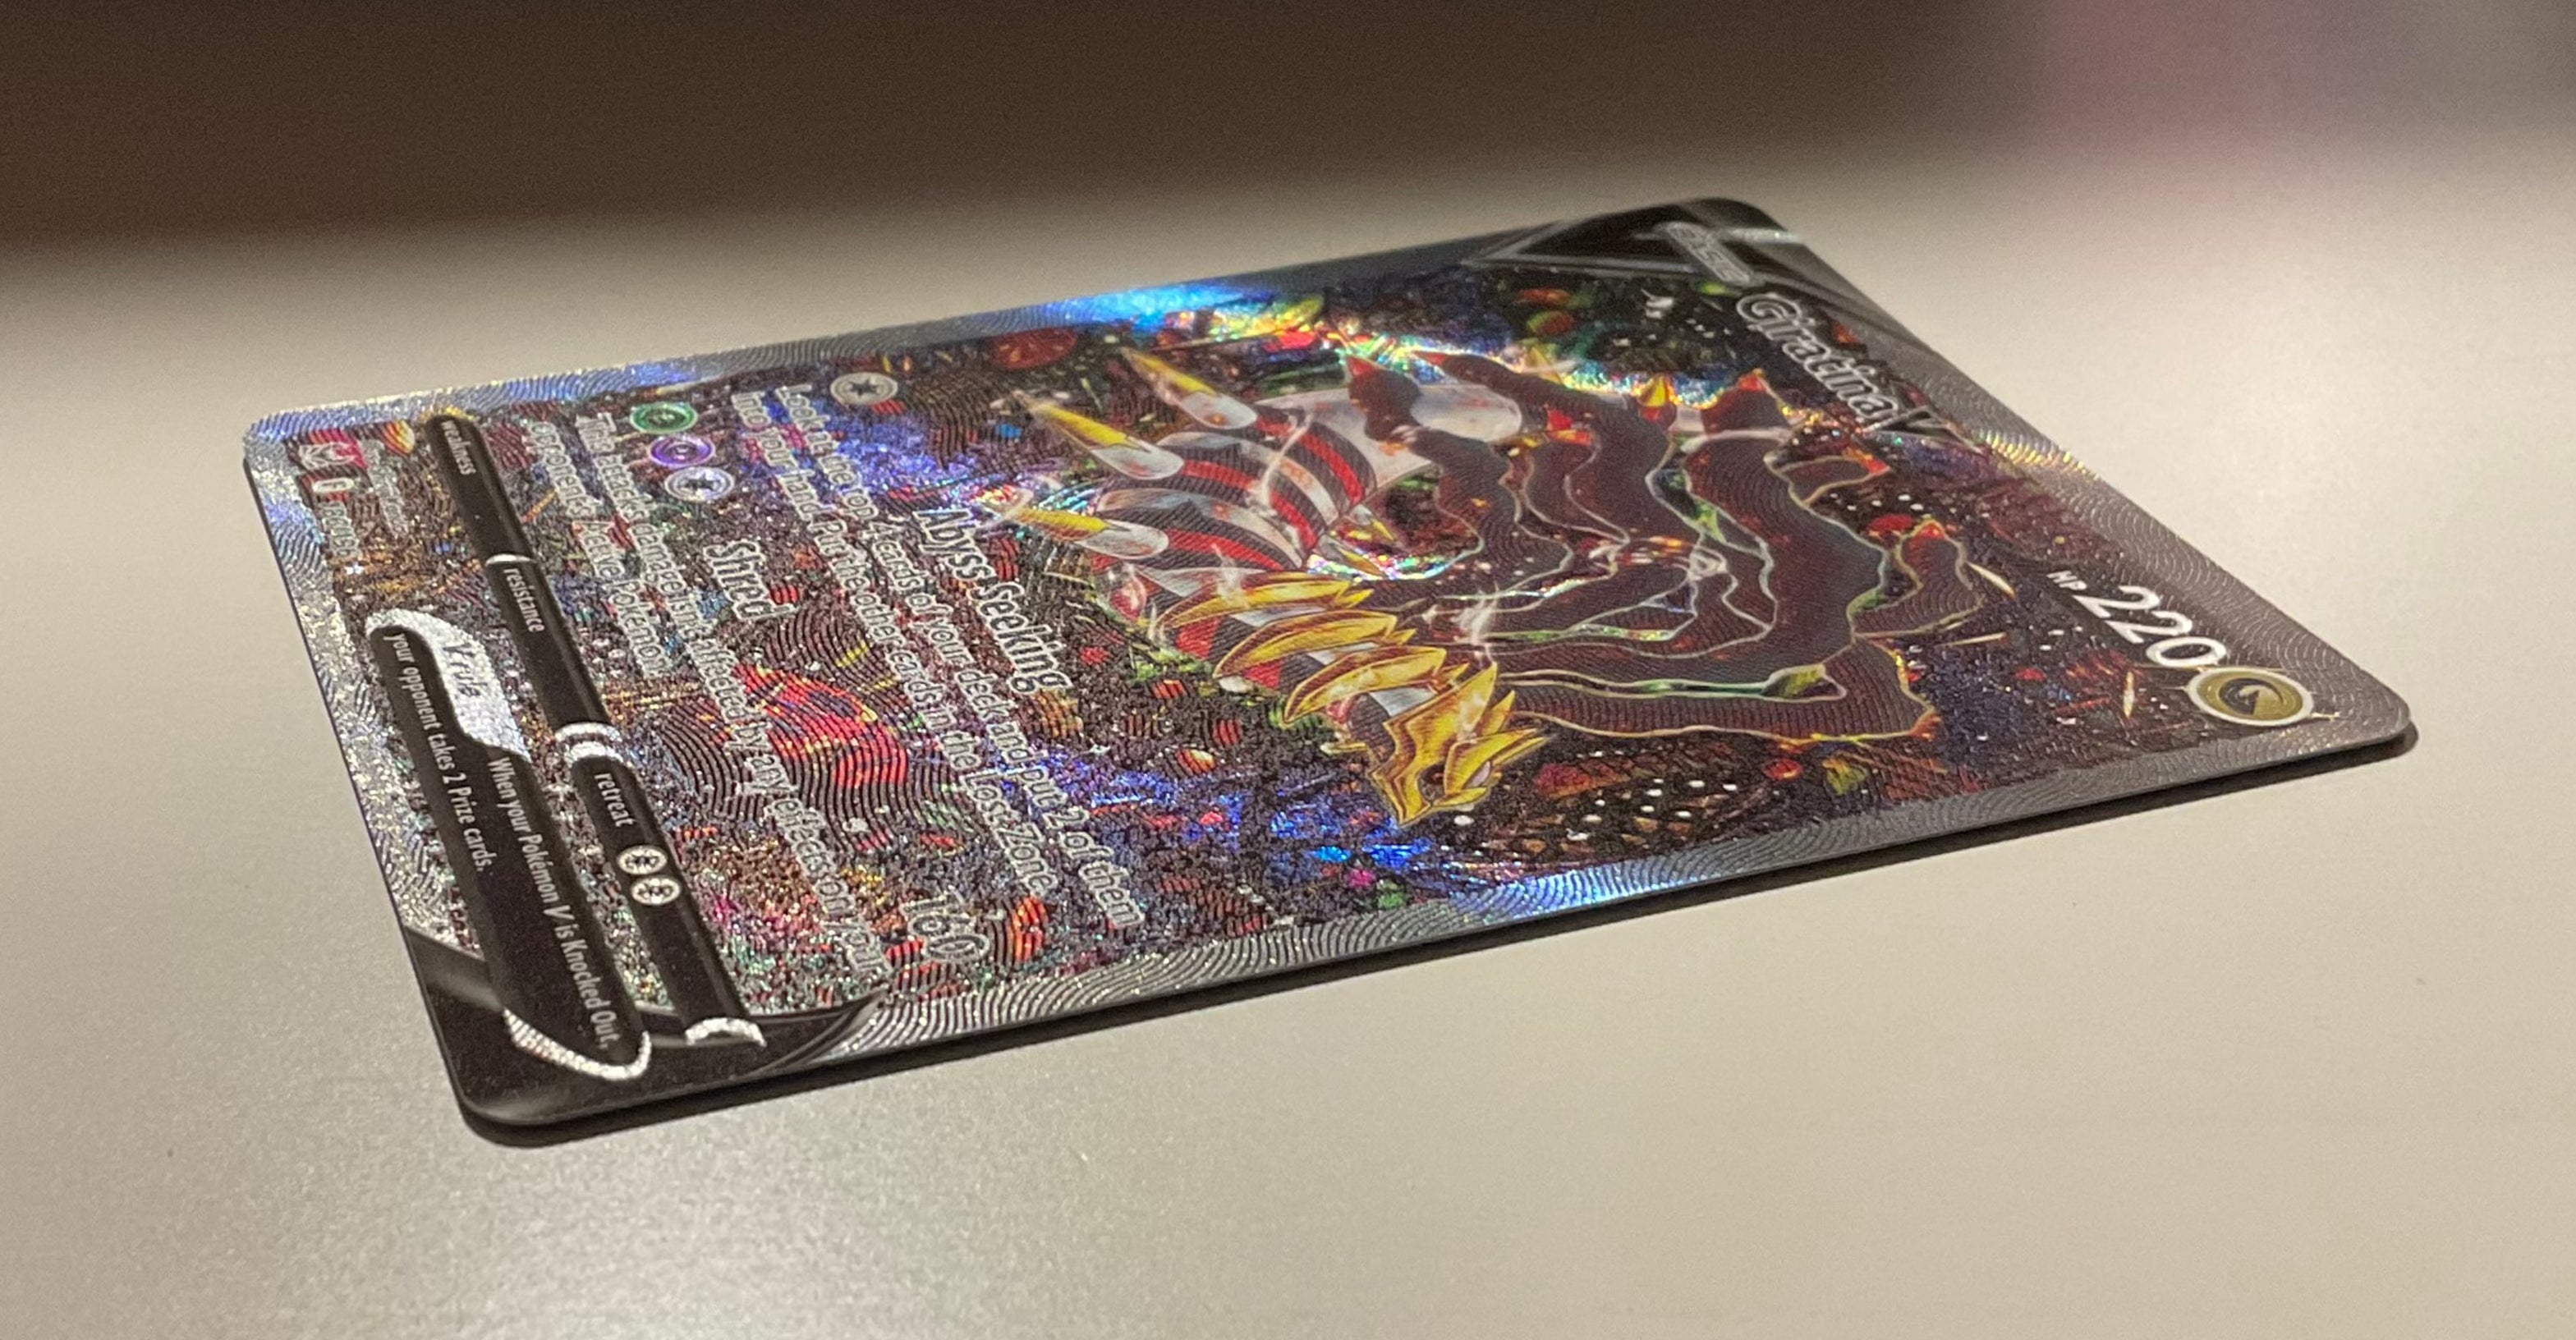 Pokemon Card Giratina V Astro ART Origine Perduta 131/196 - Vinted